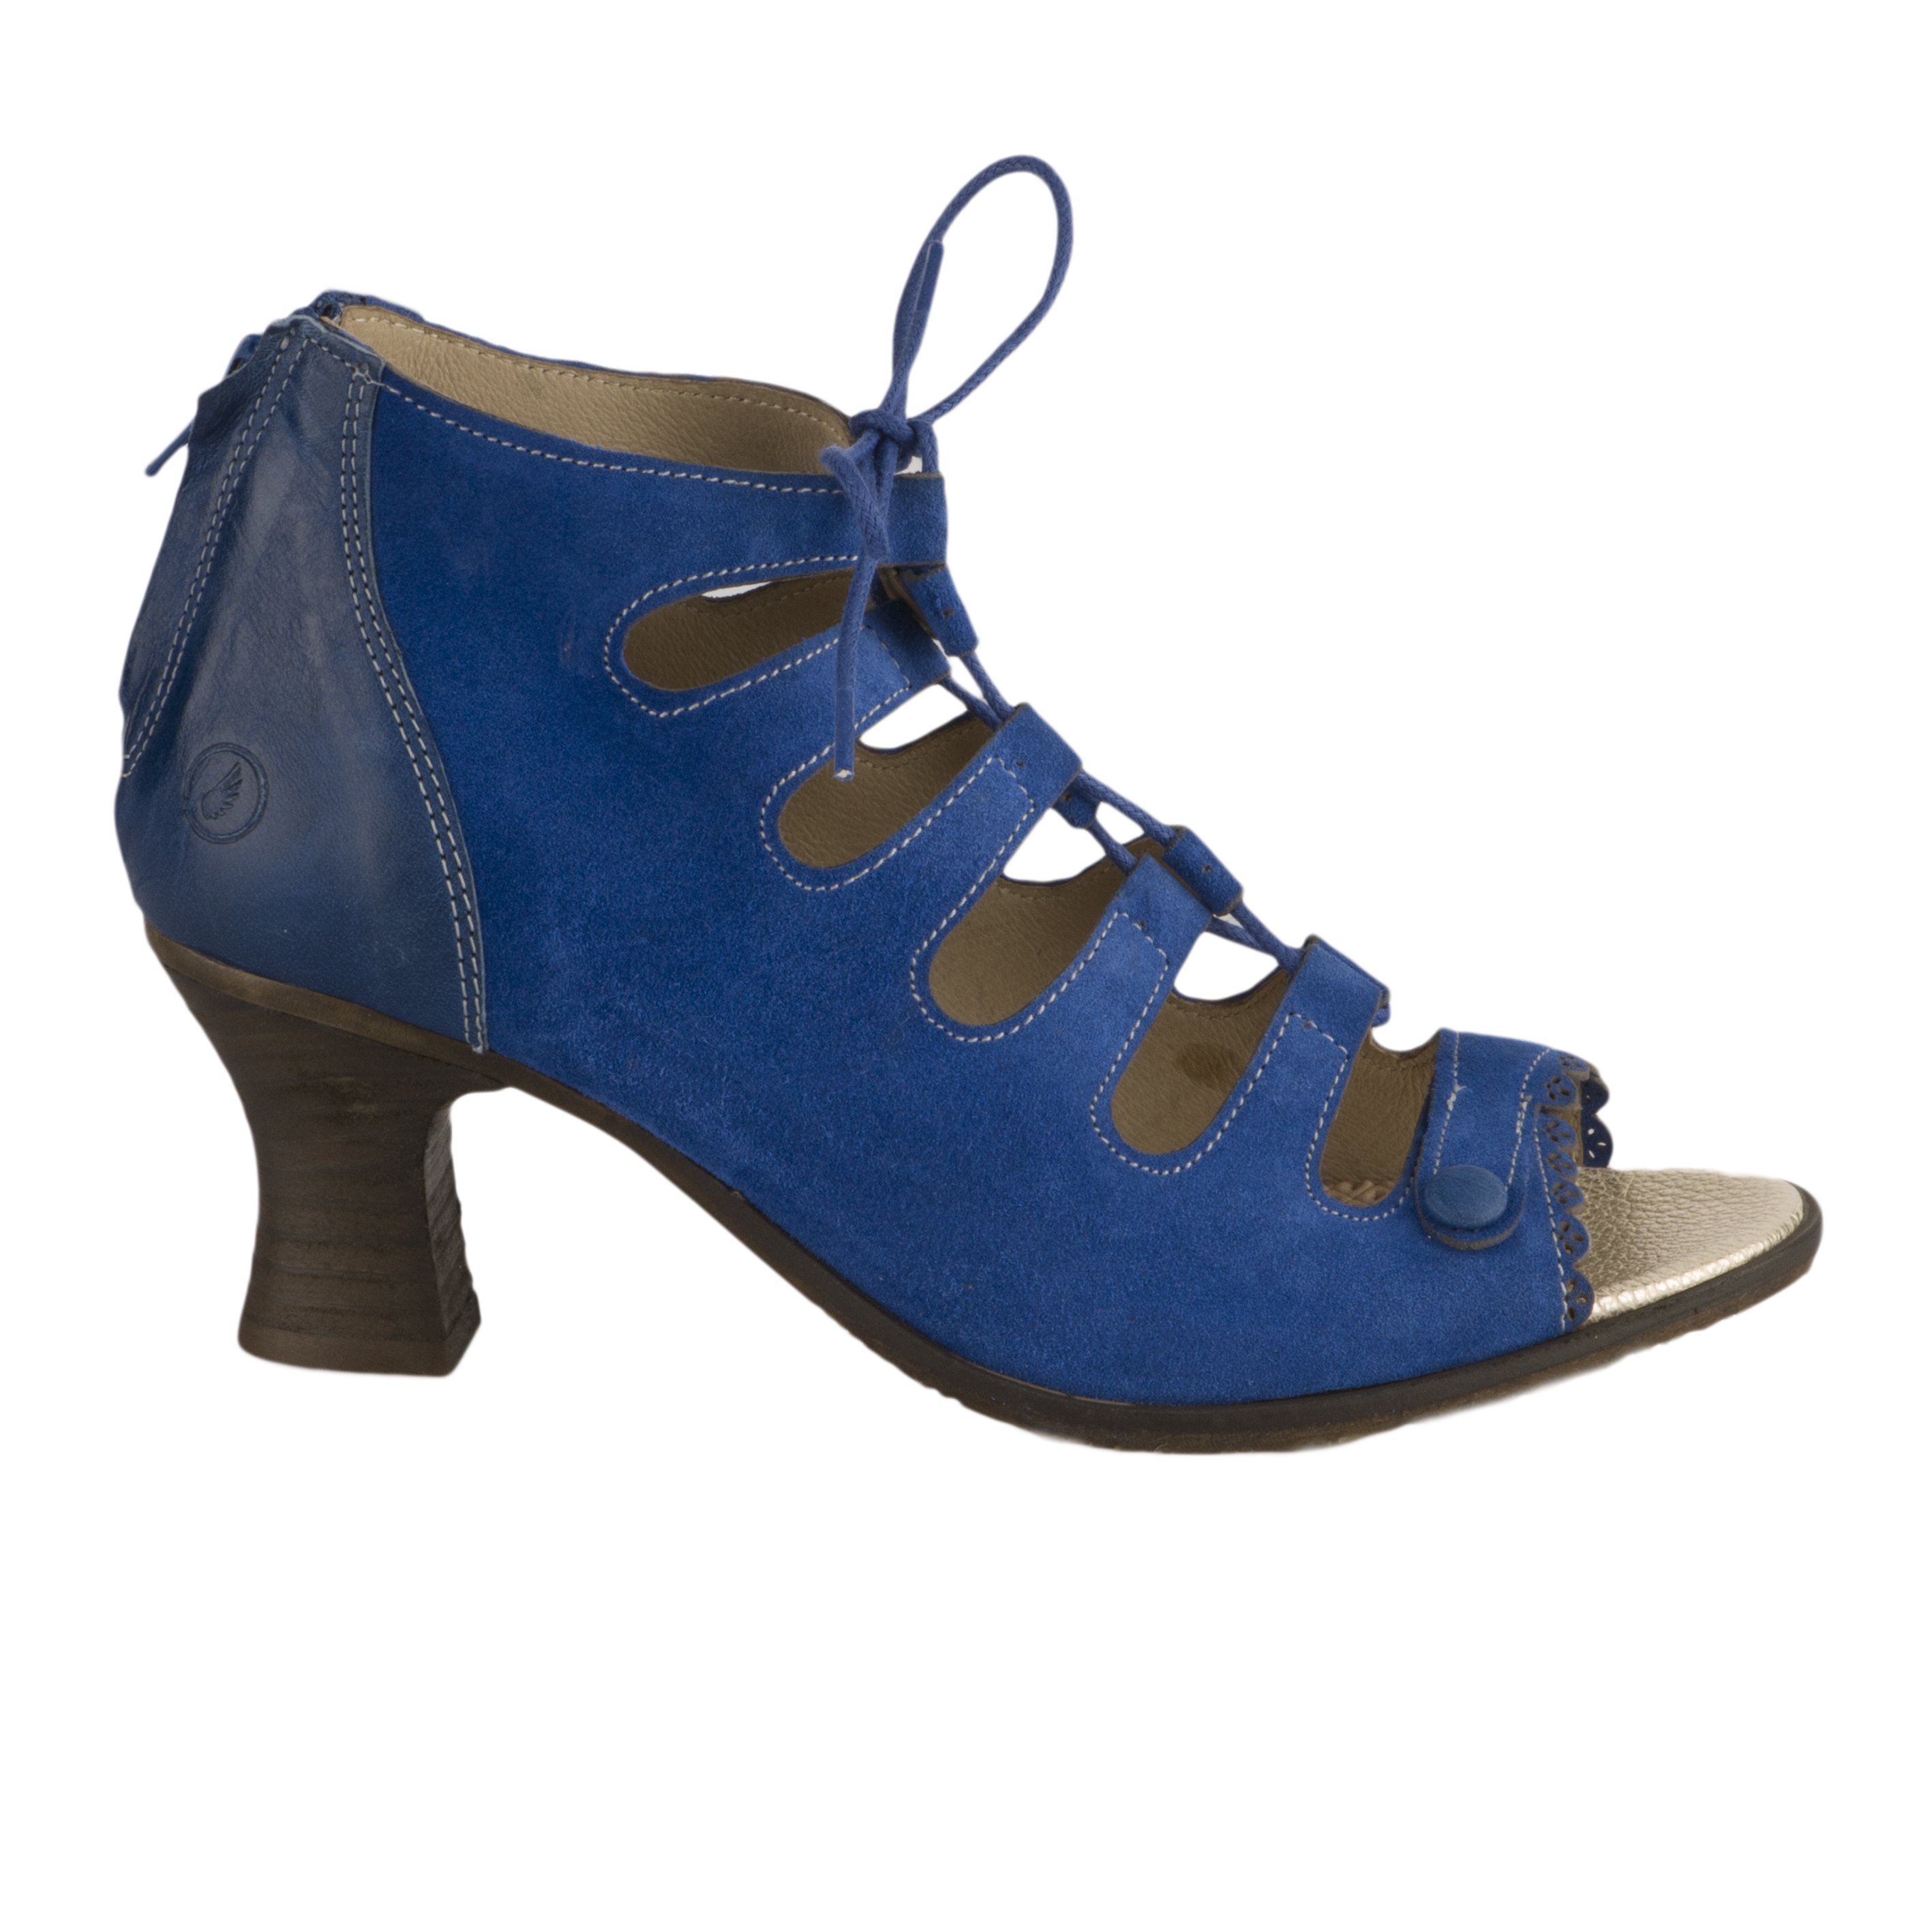 Nu pieds casta bleu femme - APOLINA - 66905